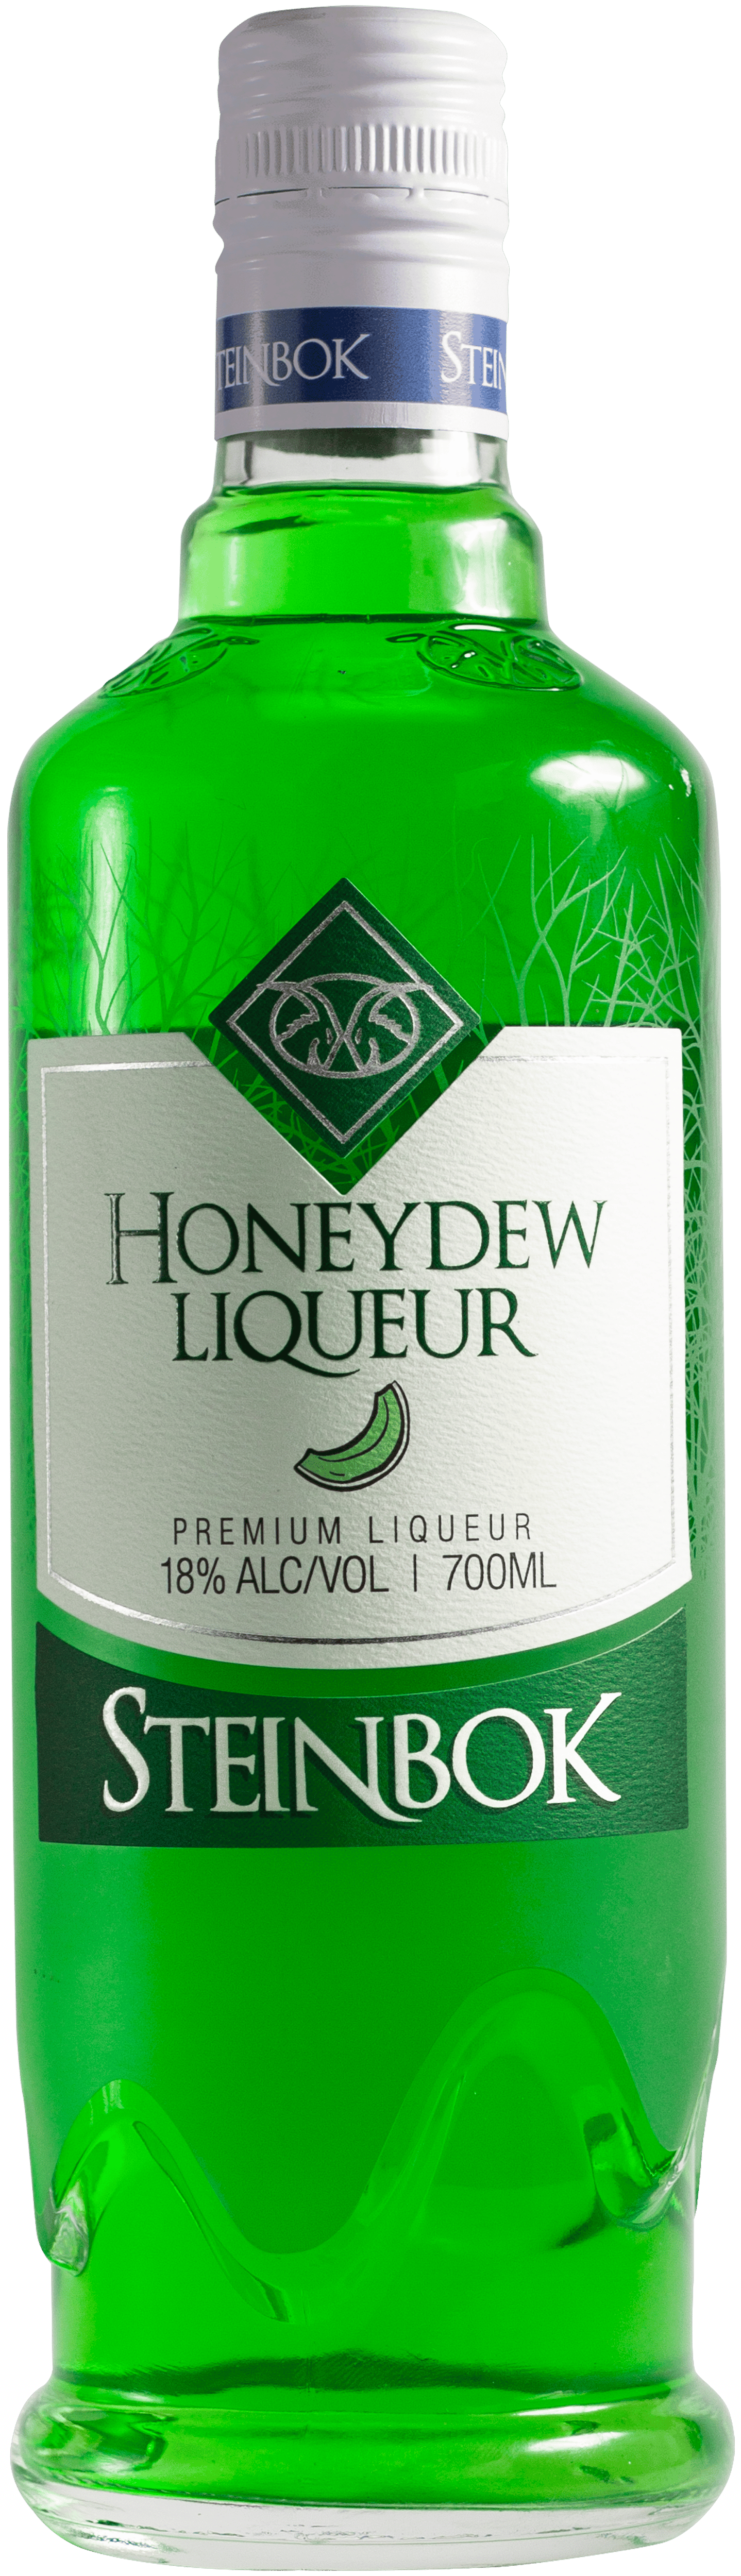 Honeydew Liqueur